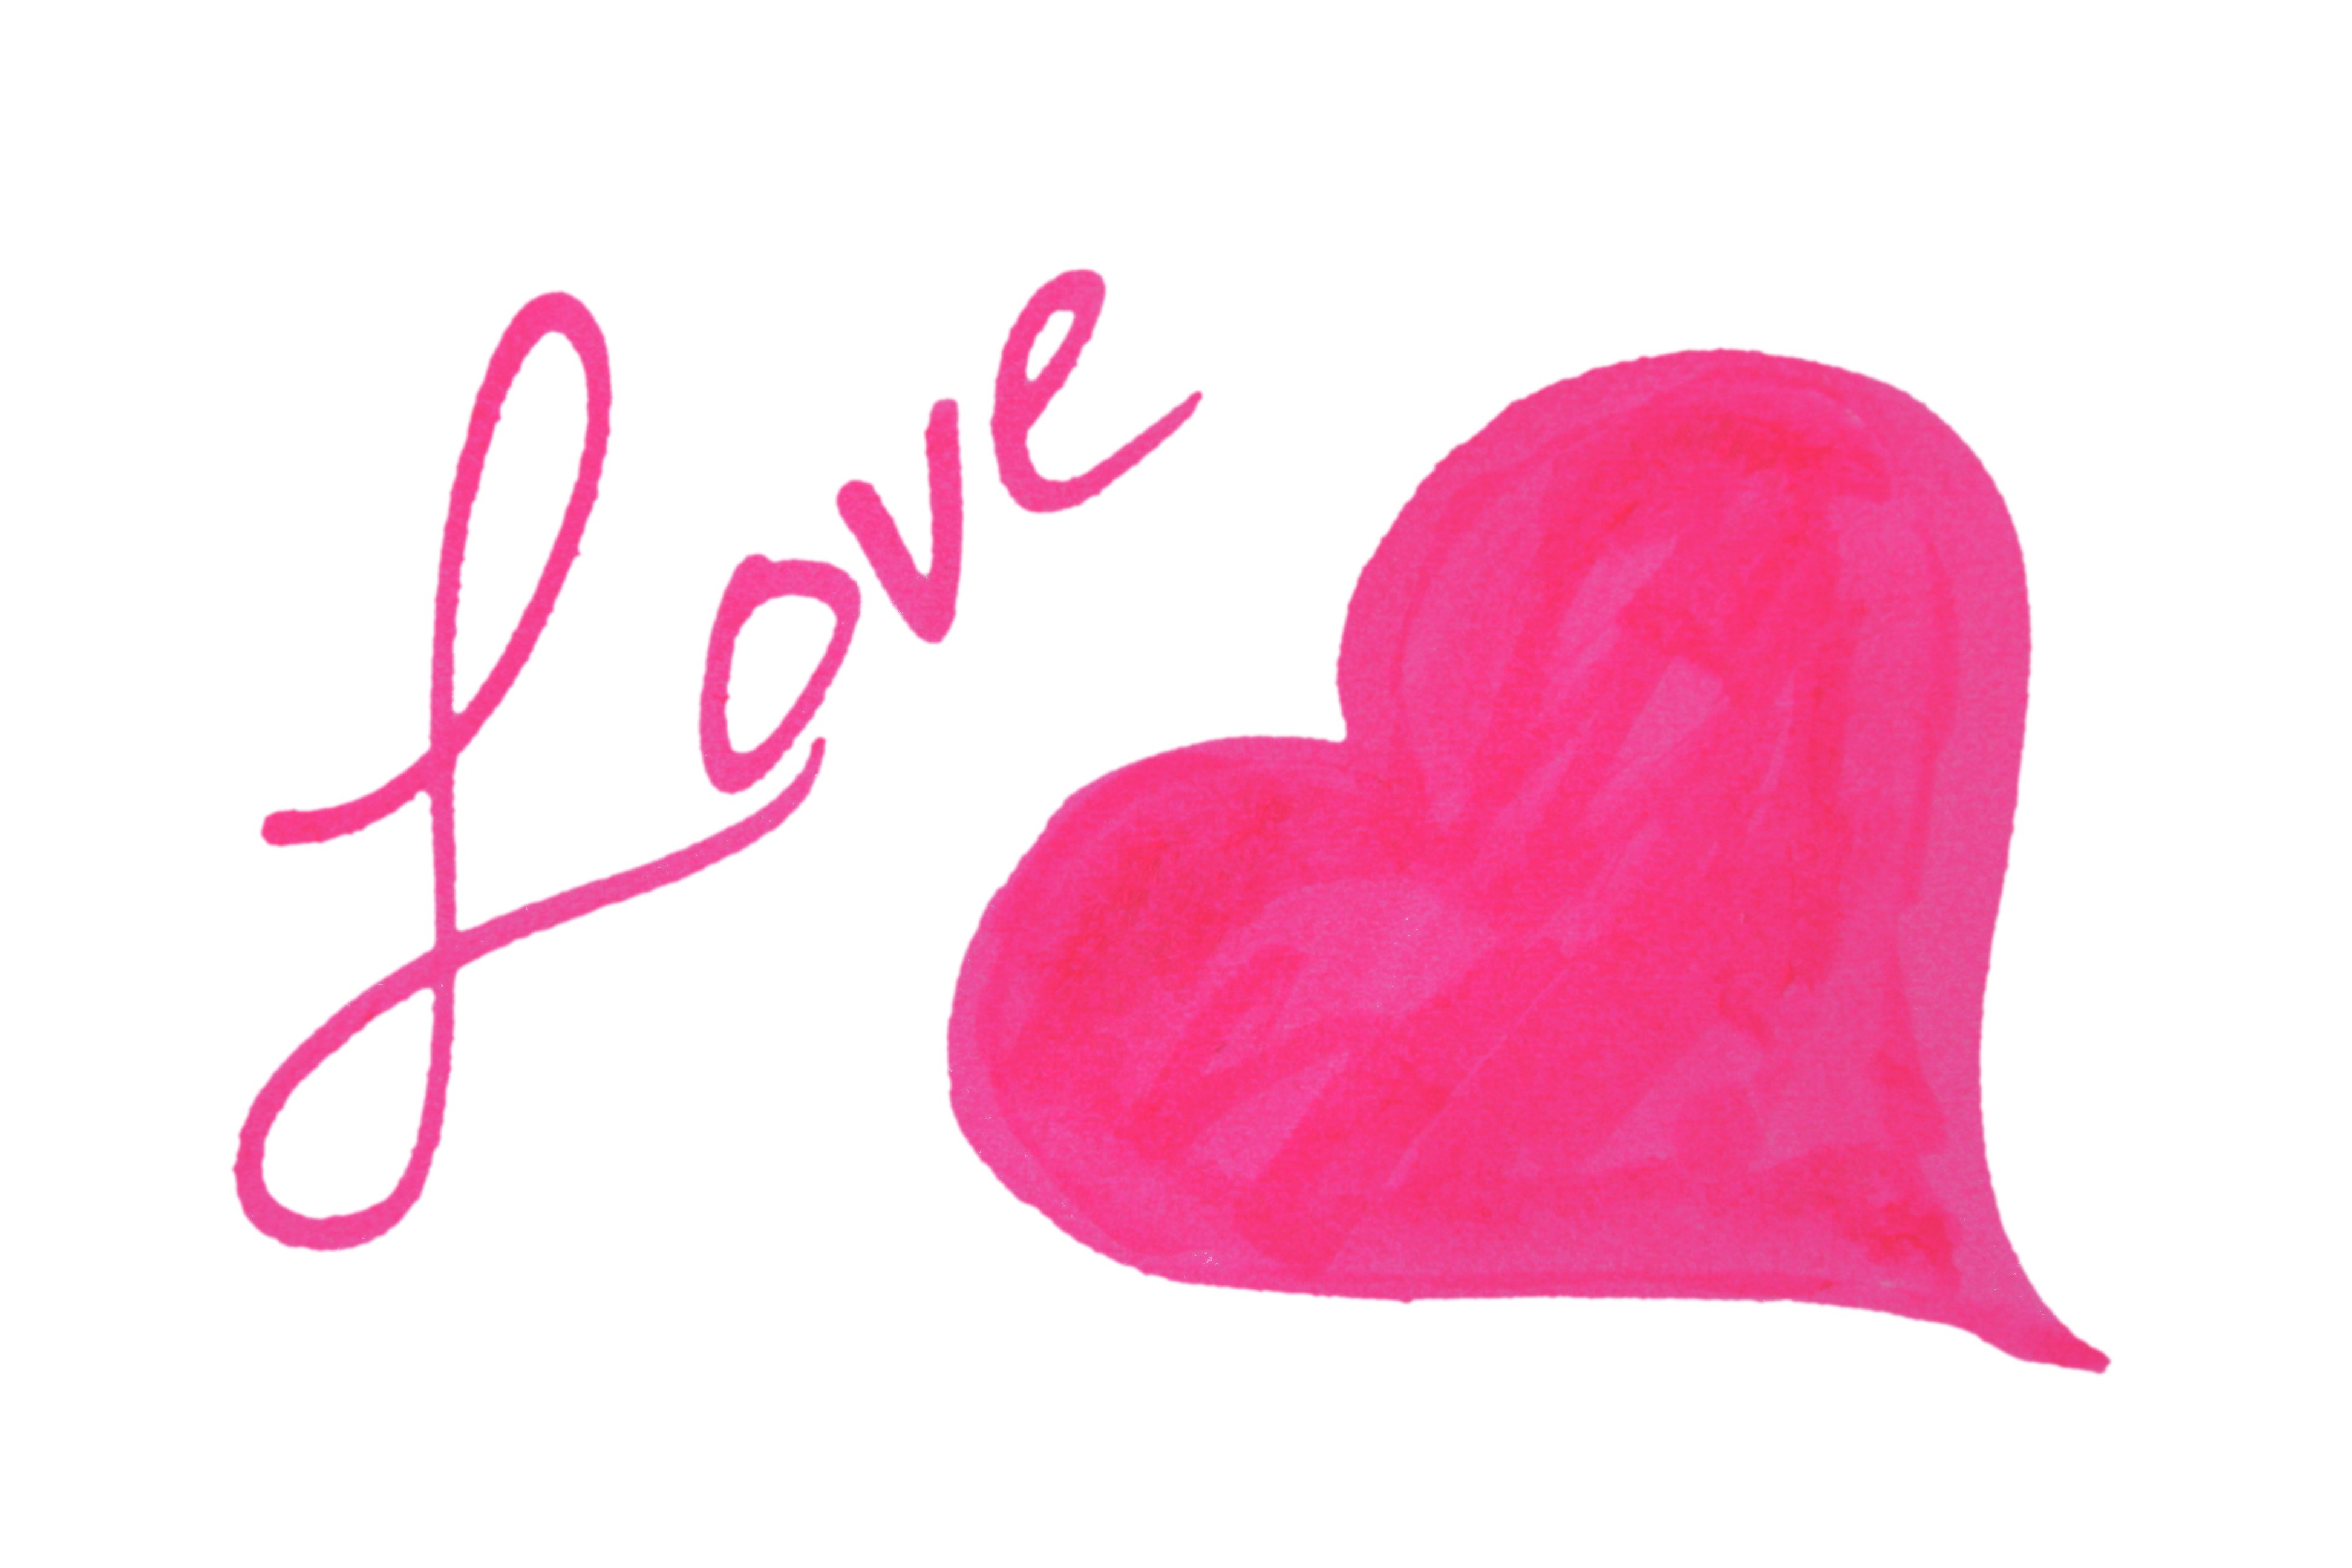 Love Heart Clip Art Picture | Free Photograph | Photos Public ...